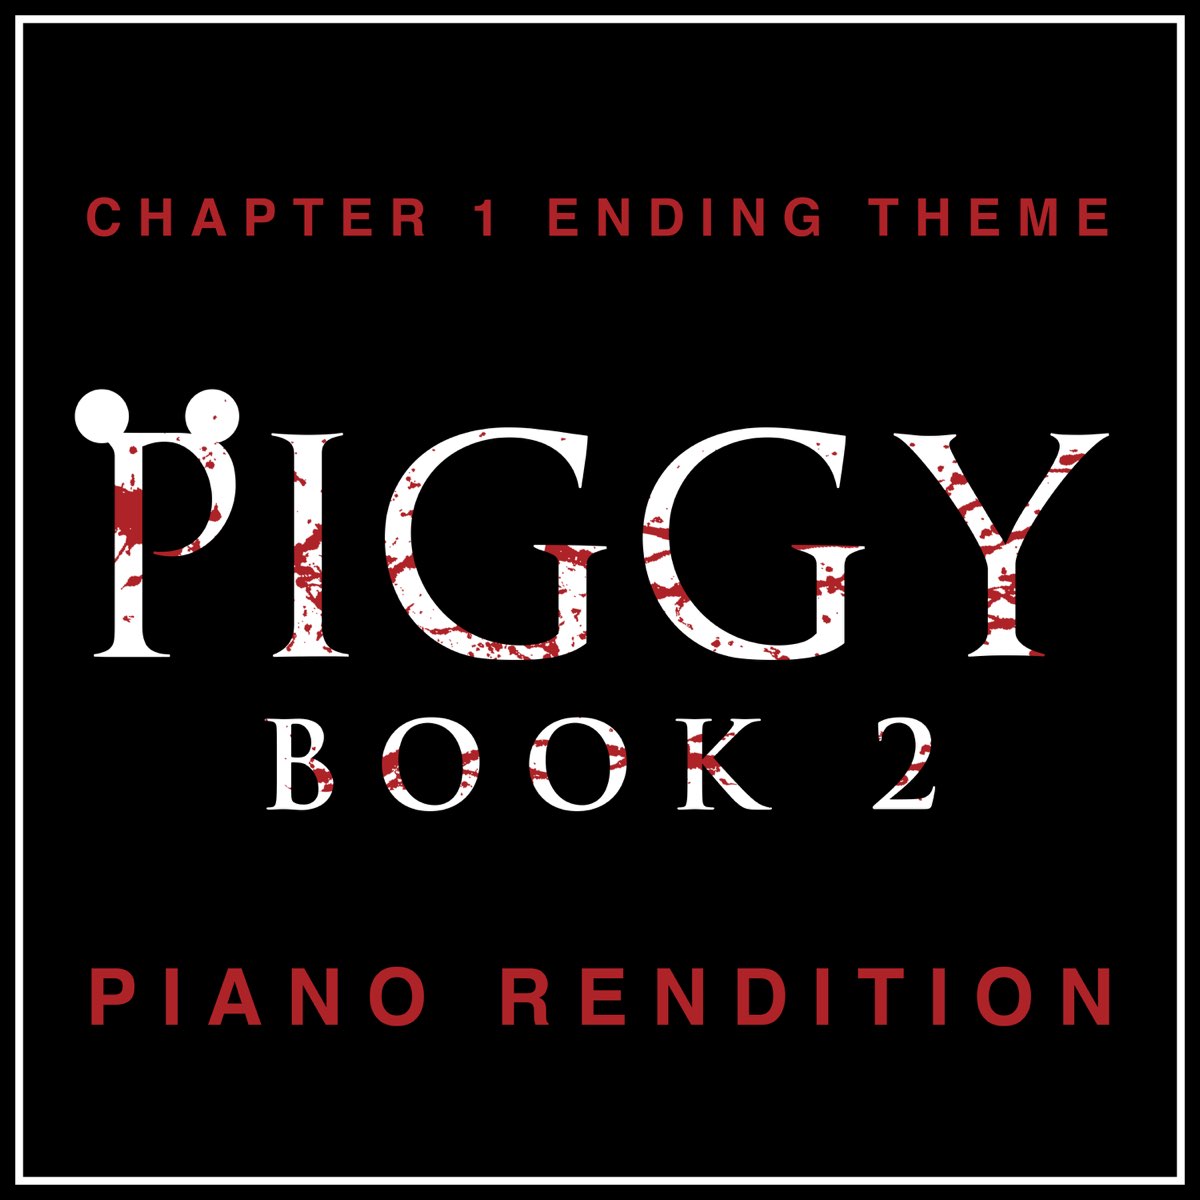 PIGGY CAPÍTULO 2 em PORTUGUÊS COMPLETO! no ROBLOX *PIGGY BOOK 2* 